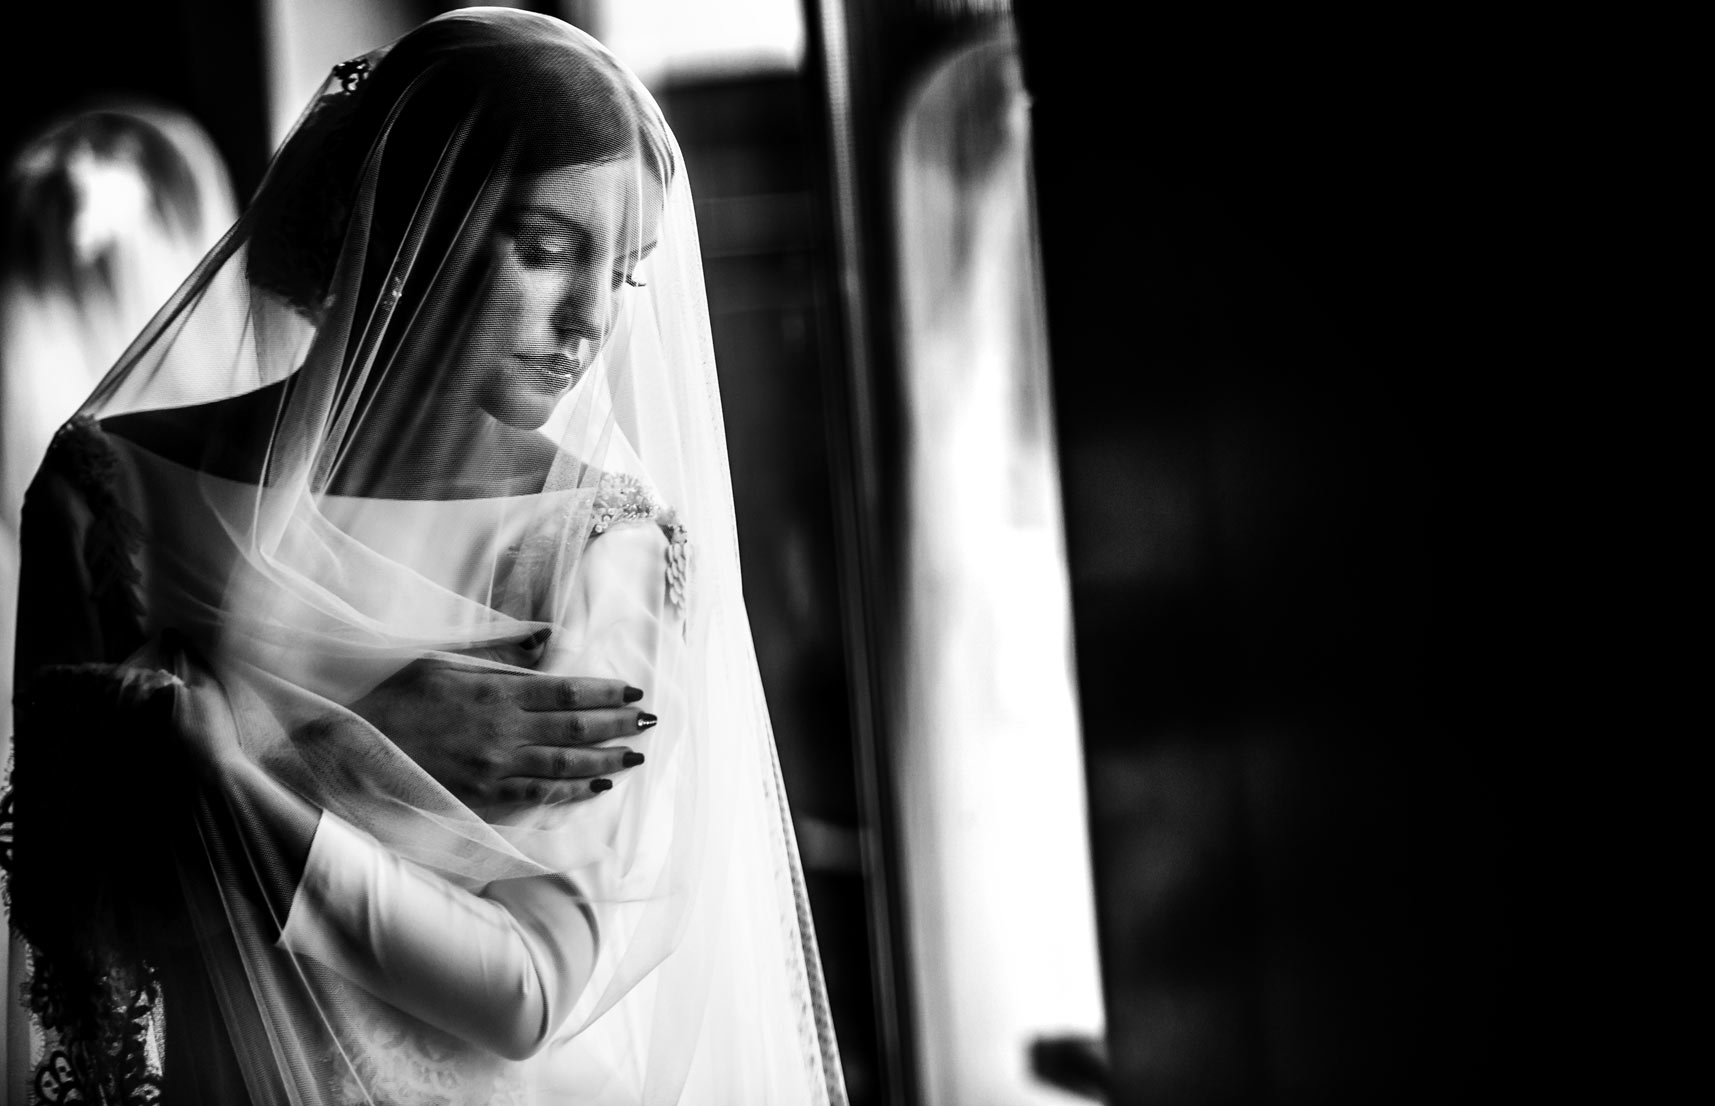 Una foto espectacular de la novia en blanco y negro, con el velo por delante.